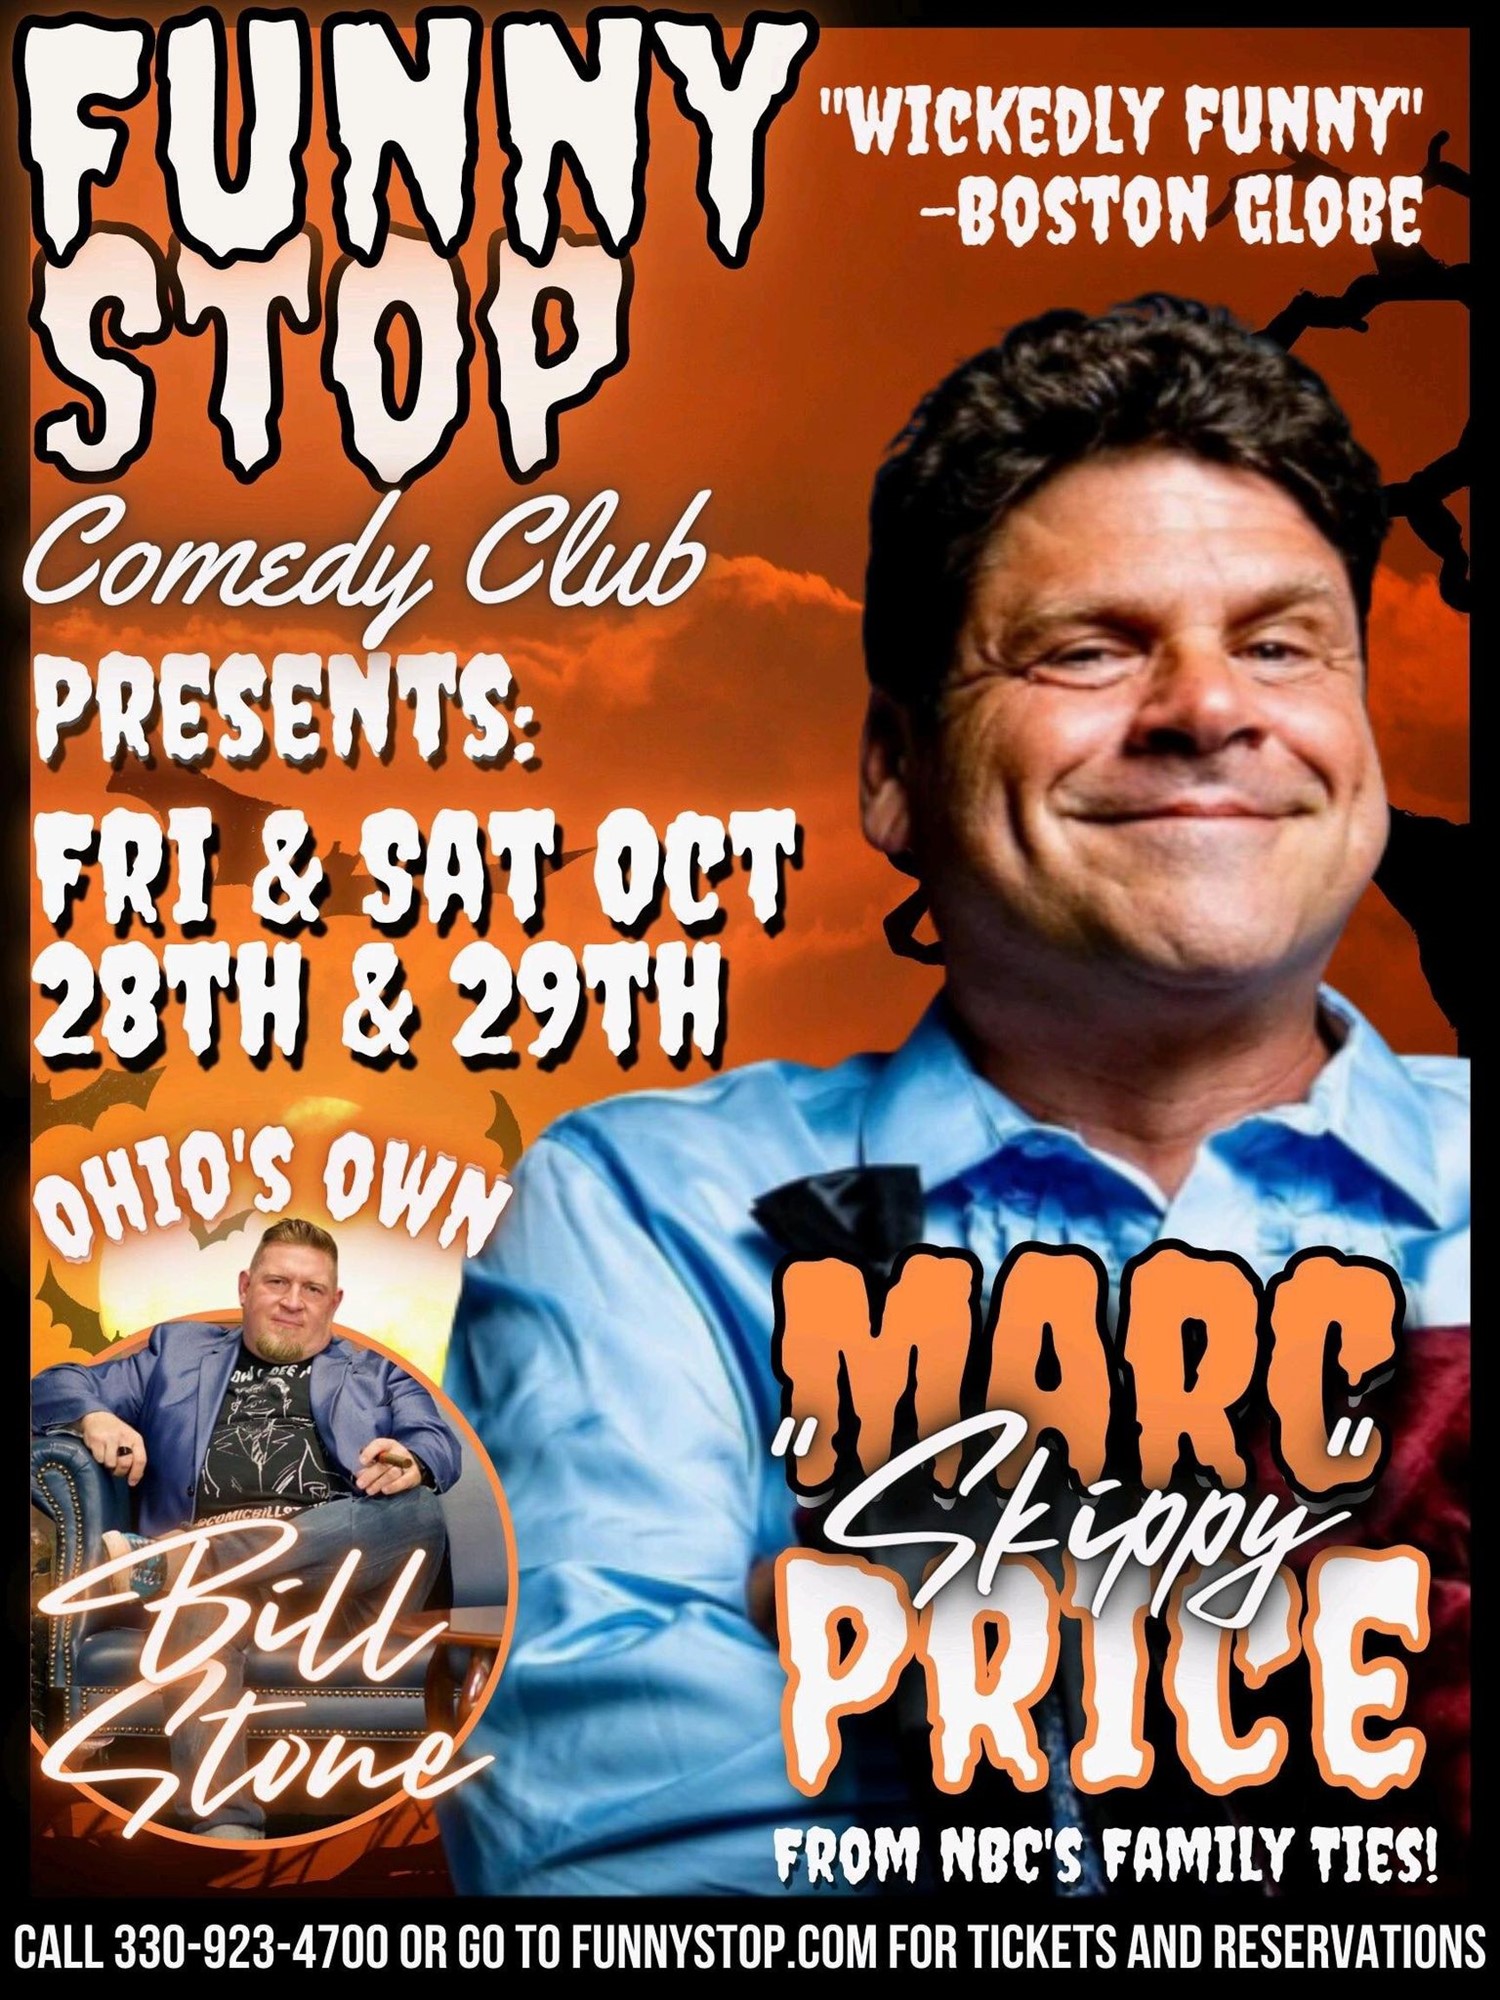 Marc (Skippy) Price Sat. 9:20 Show Funny Stop Comedy Club on oct. 29, 21:20@Funny Stop Comedy Club - Compra entradas y obtén información enFunny Stop funnystop.online